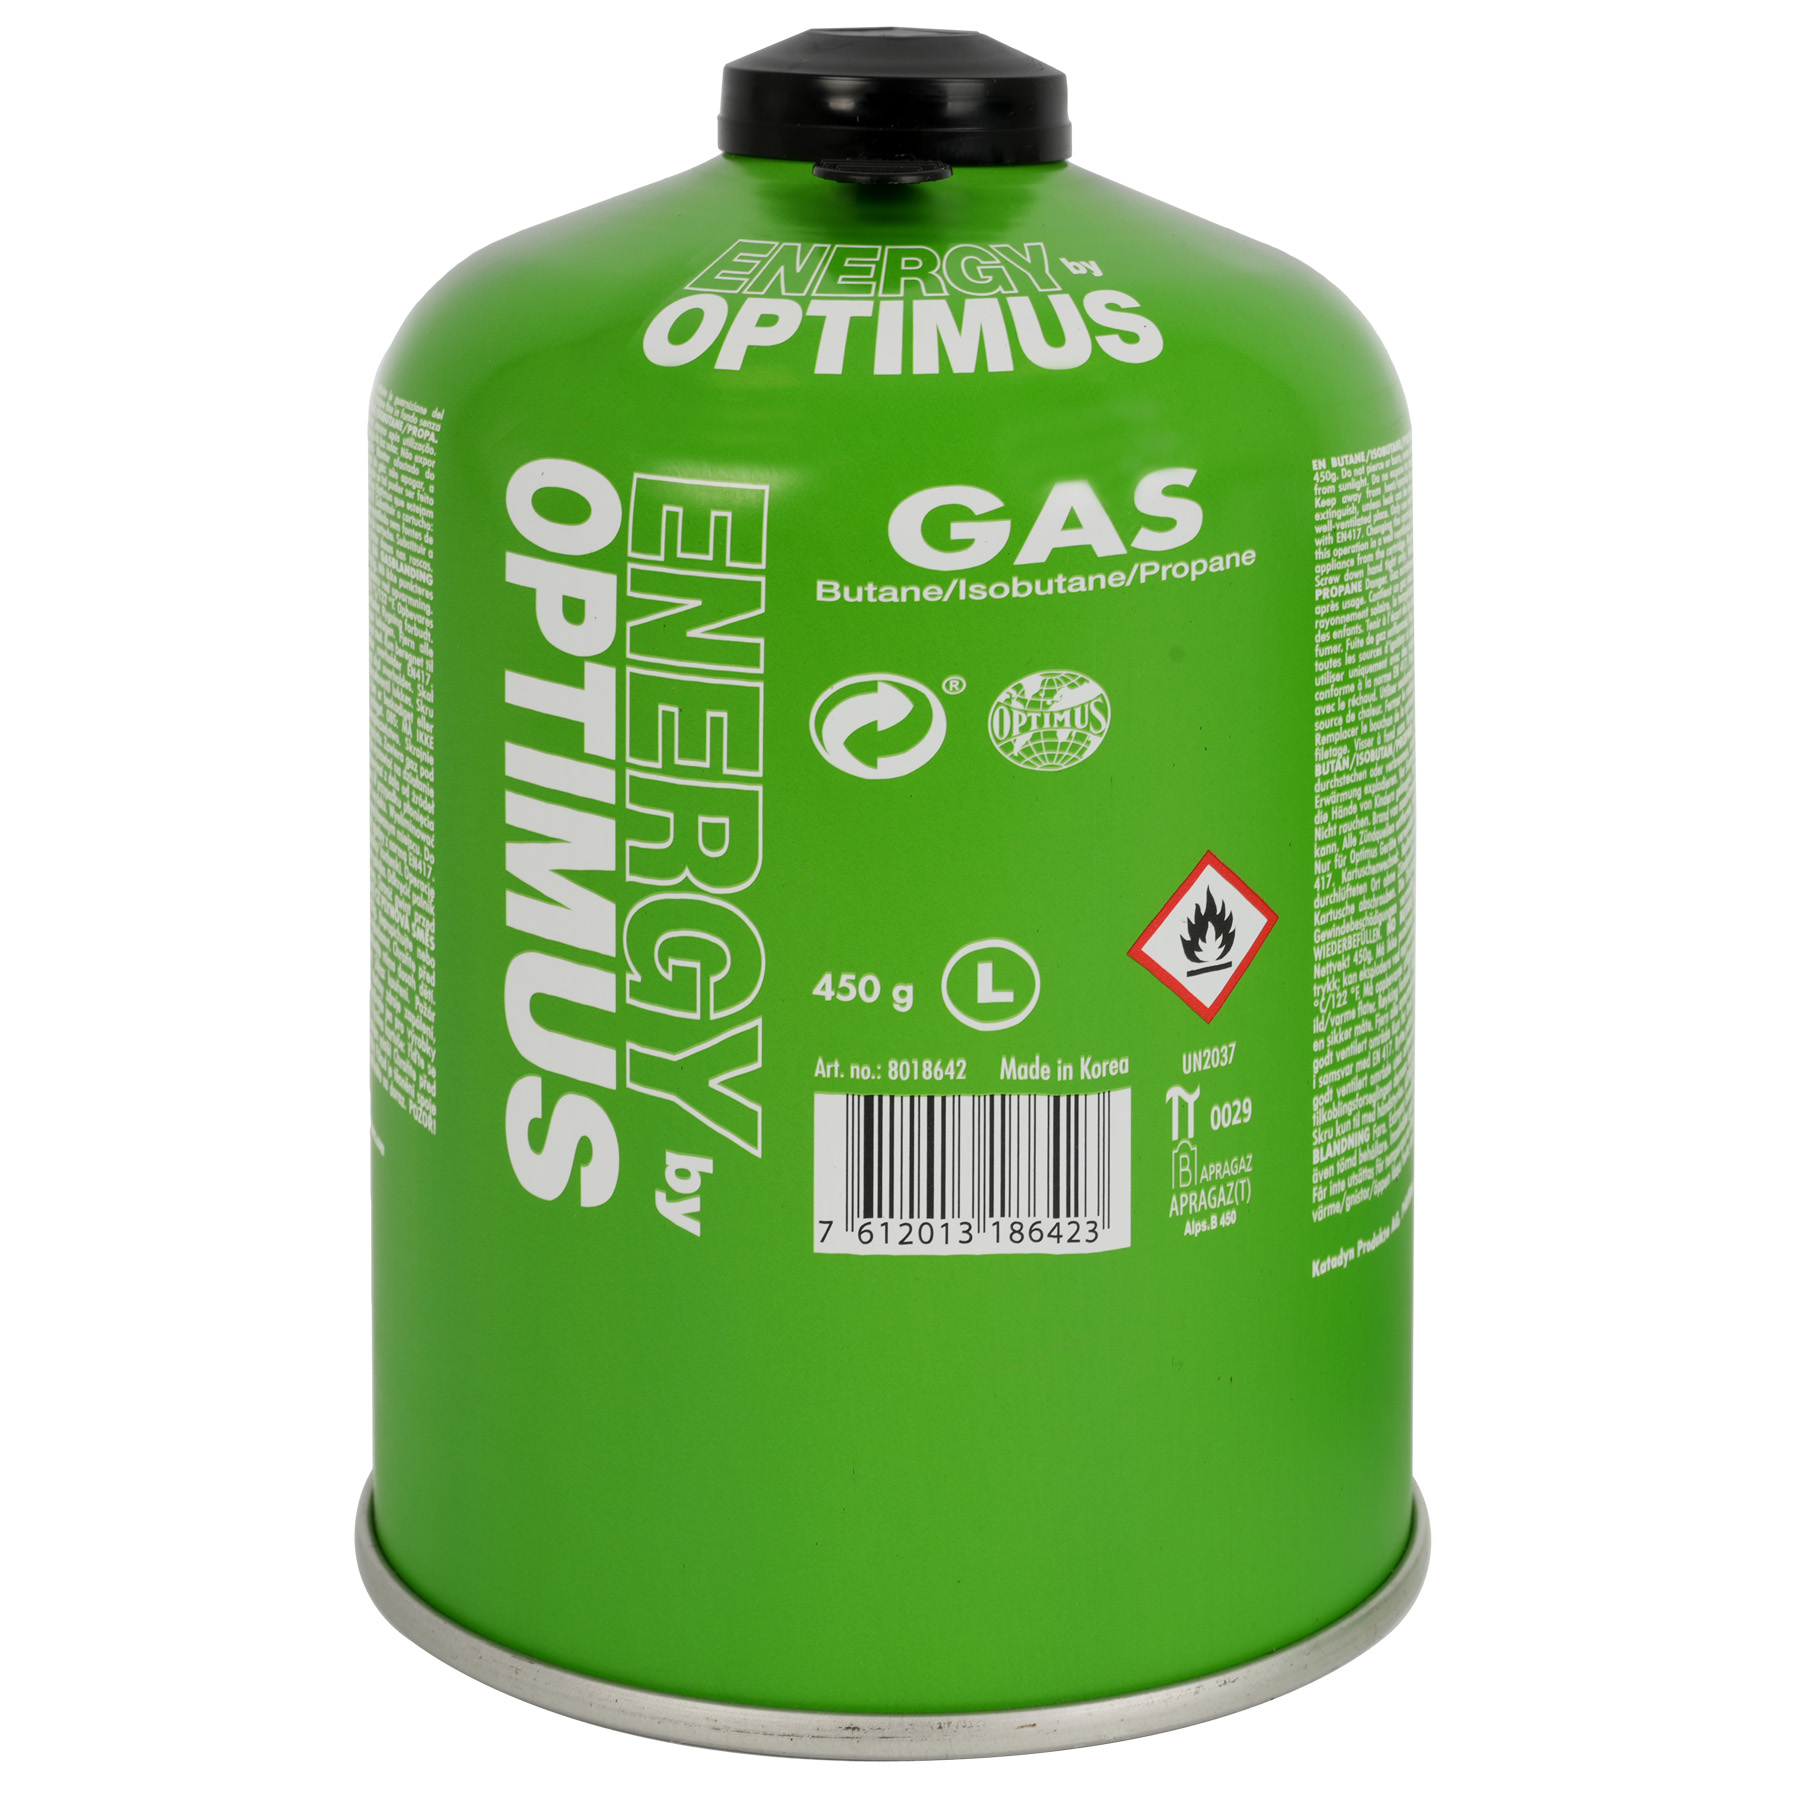 Productfoto van Optimus Universal Gaspatroon - 450g